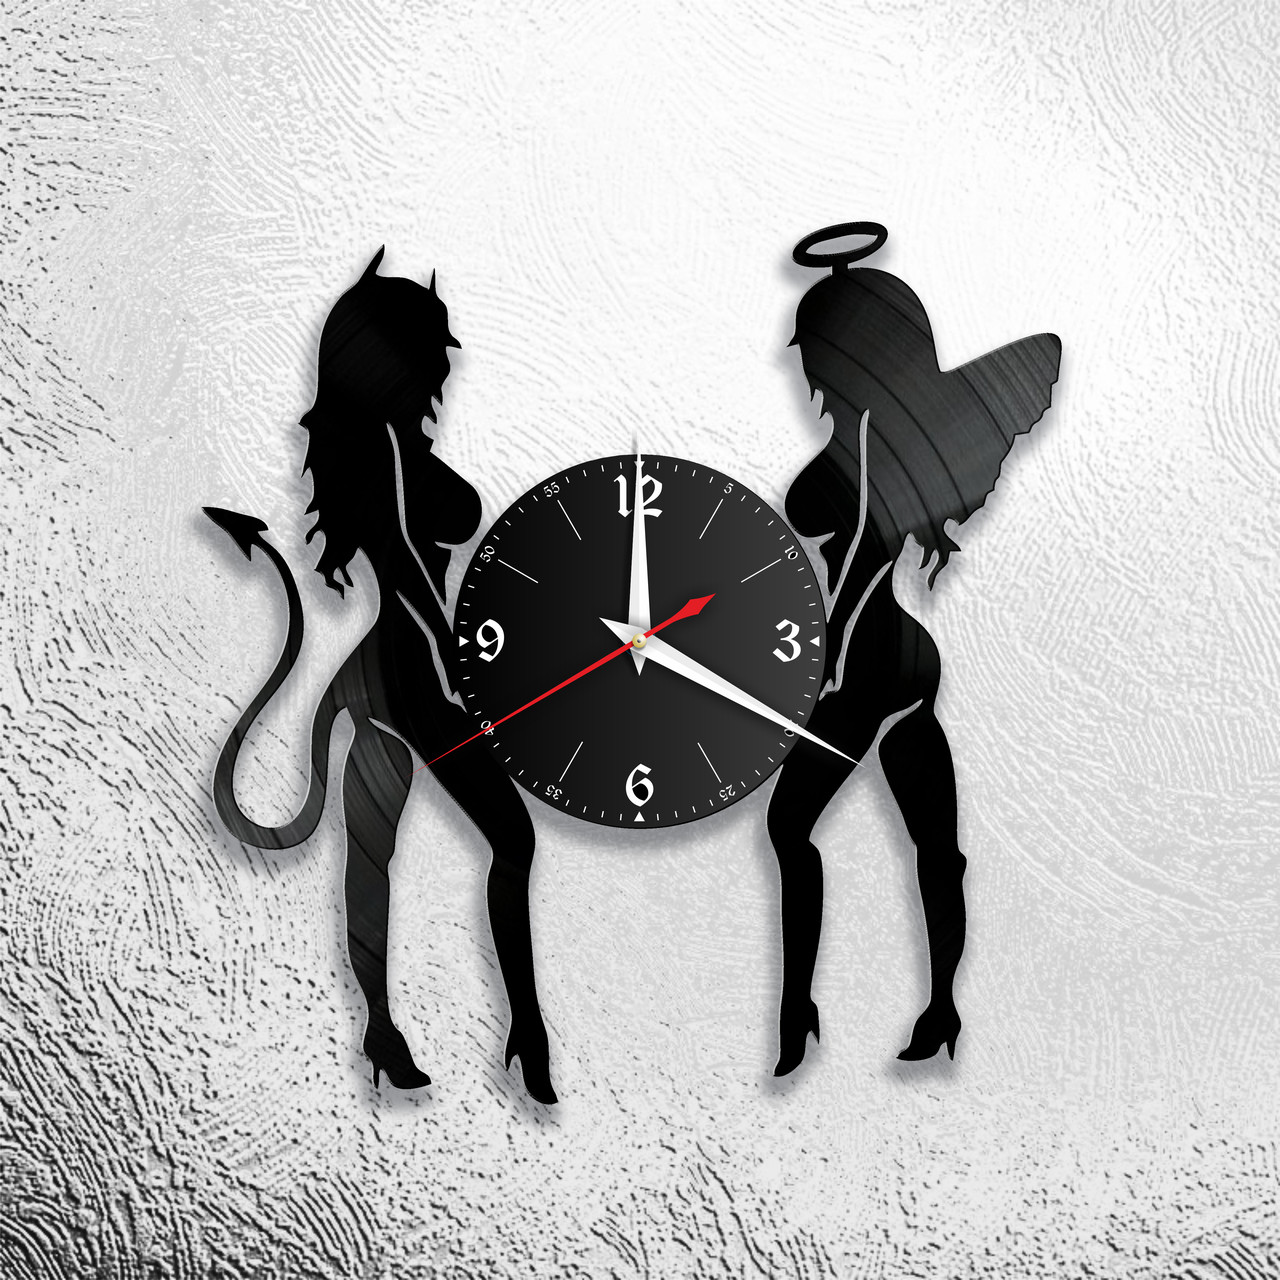 Оригинальные часы из виниловых пластинок "Ангел и бес" версия 1